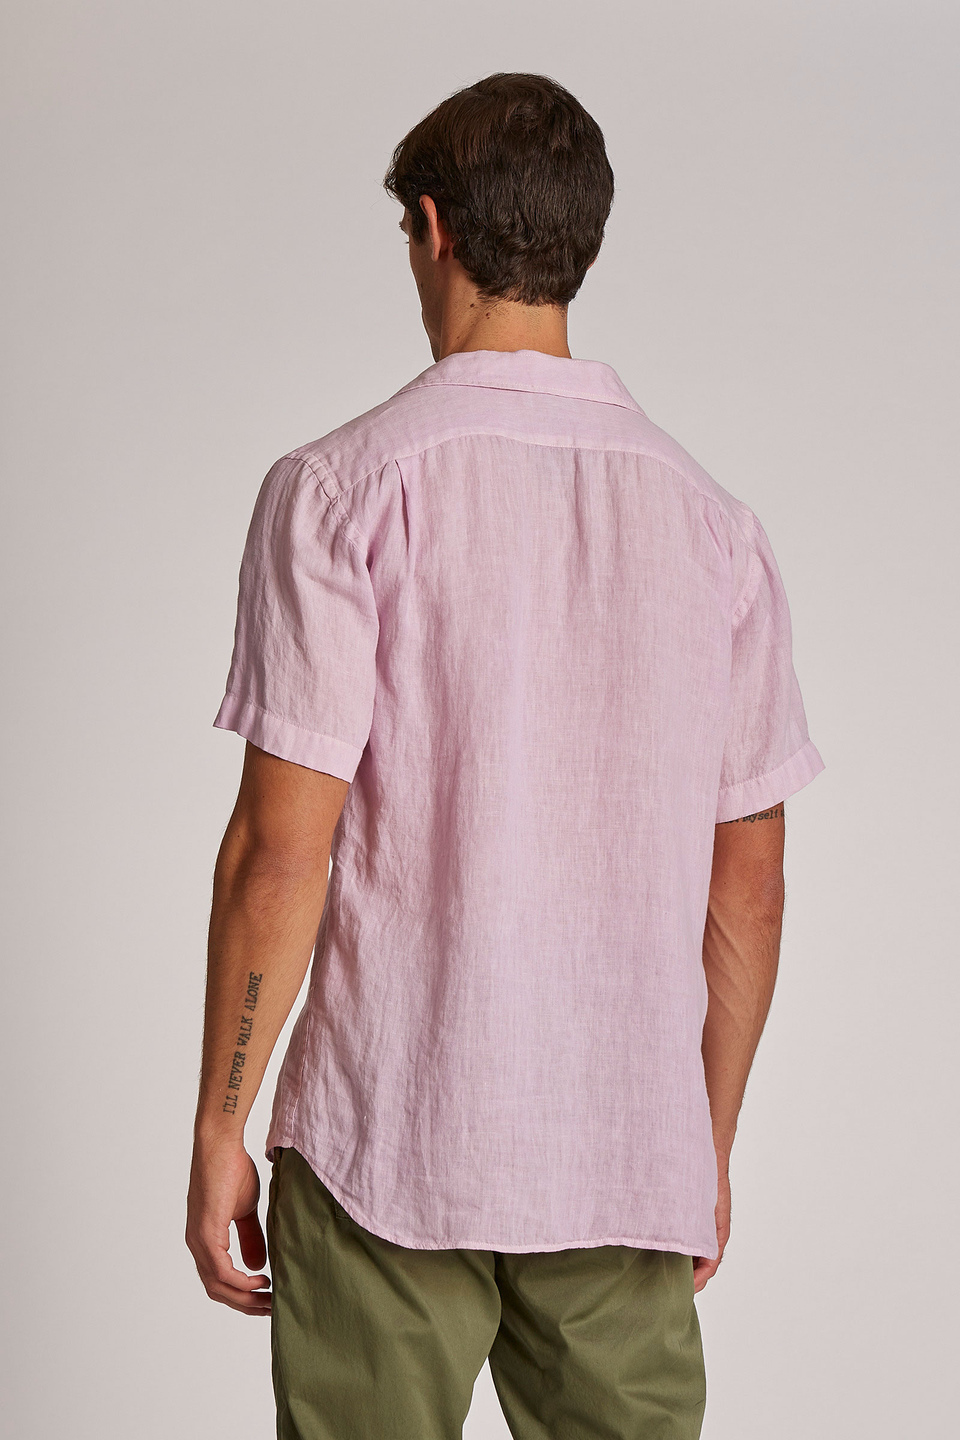 Camicia da uomo in lino a maniche corte regular fit | La Martina - Official Online Shop